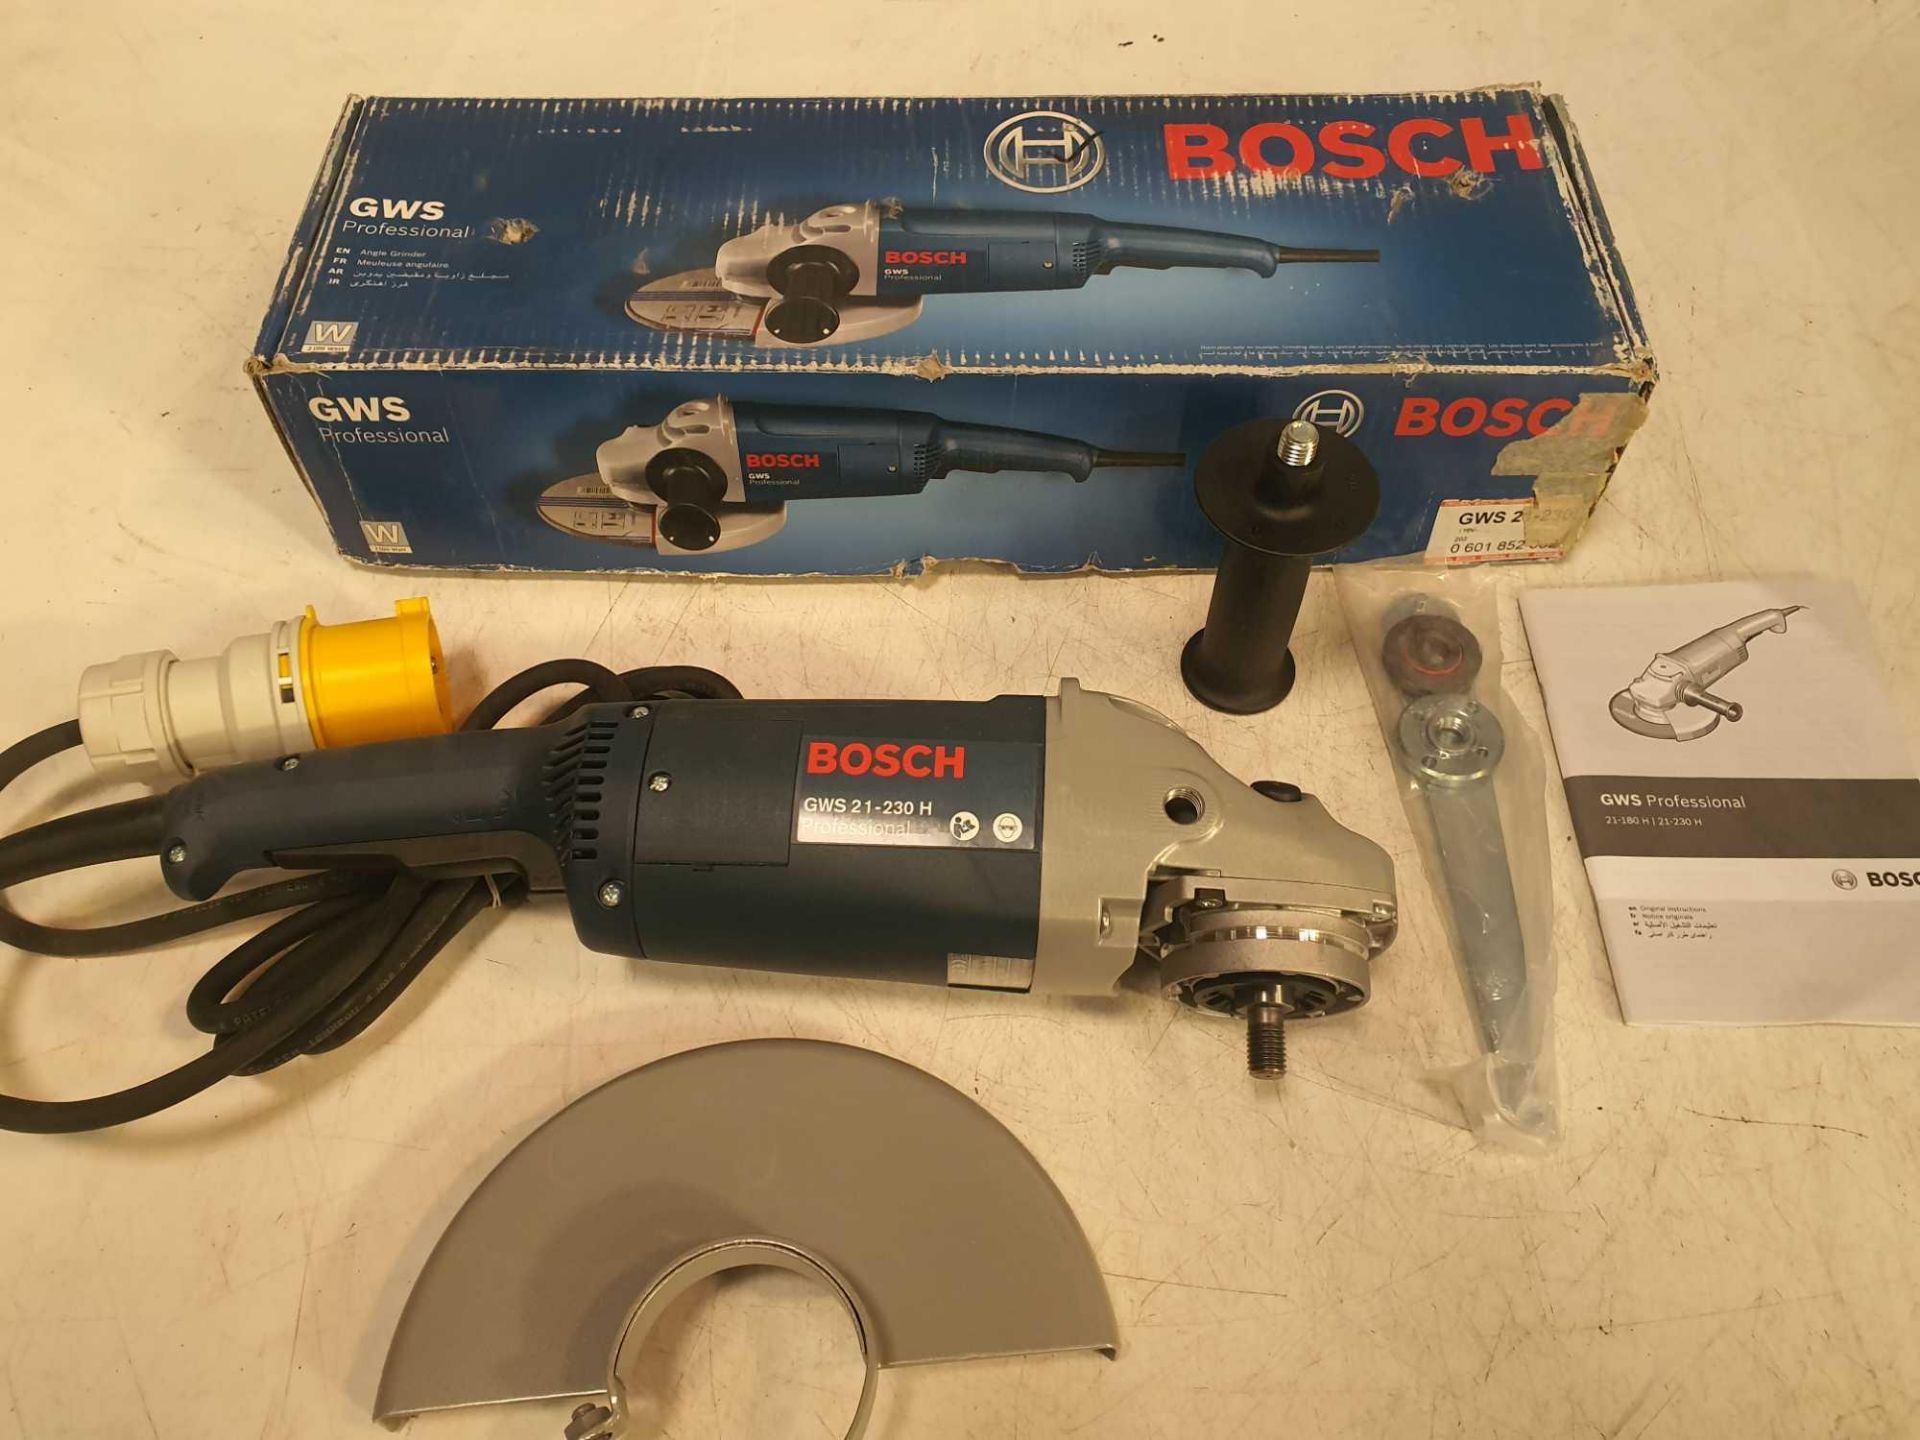 Bosch 110v angle grinder - Image 3 of 3